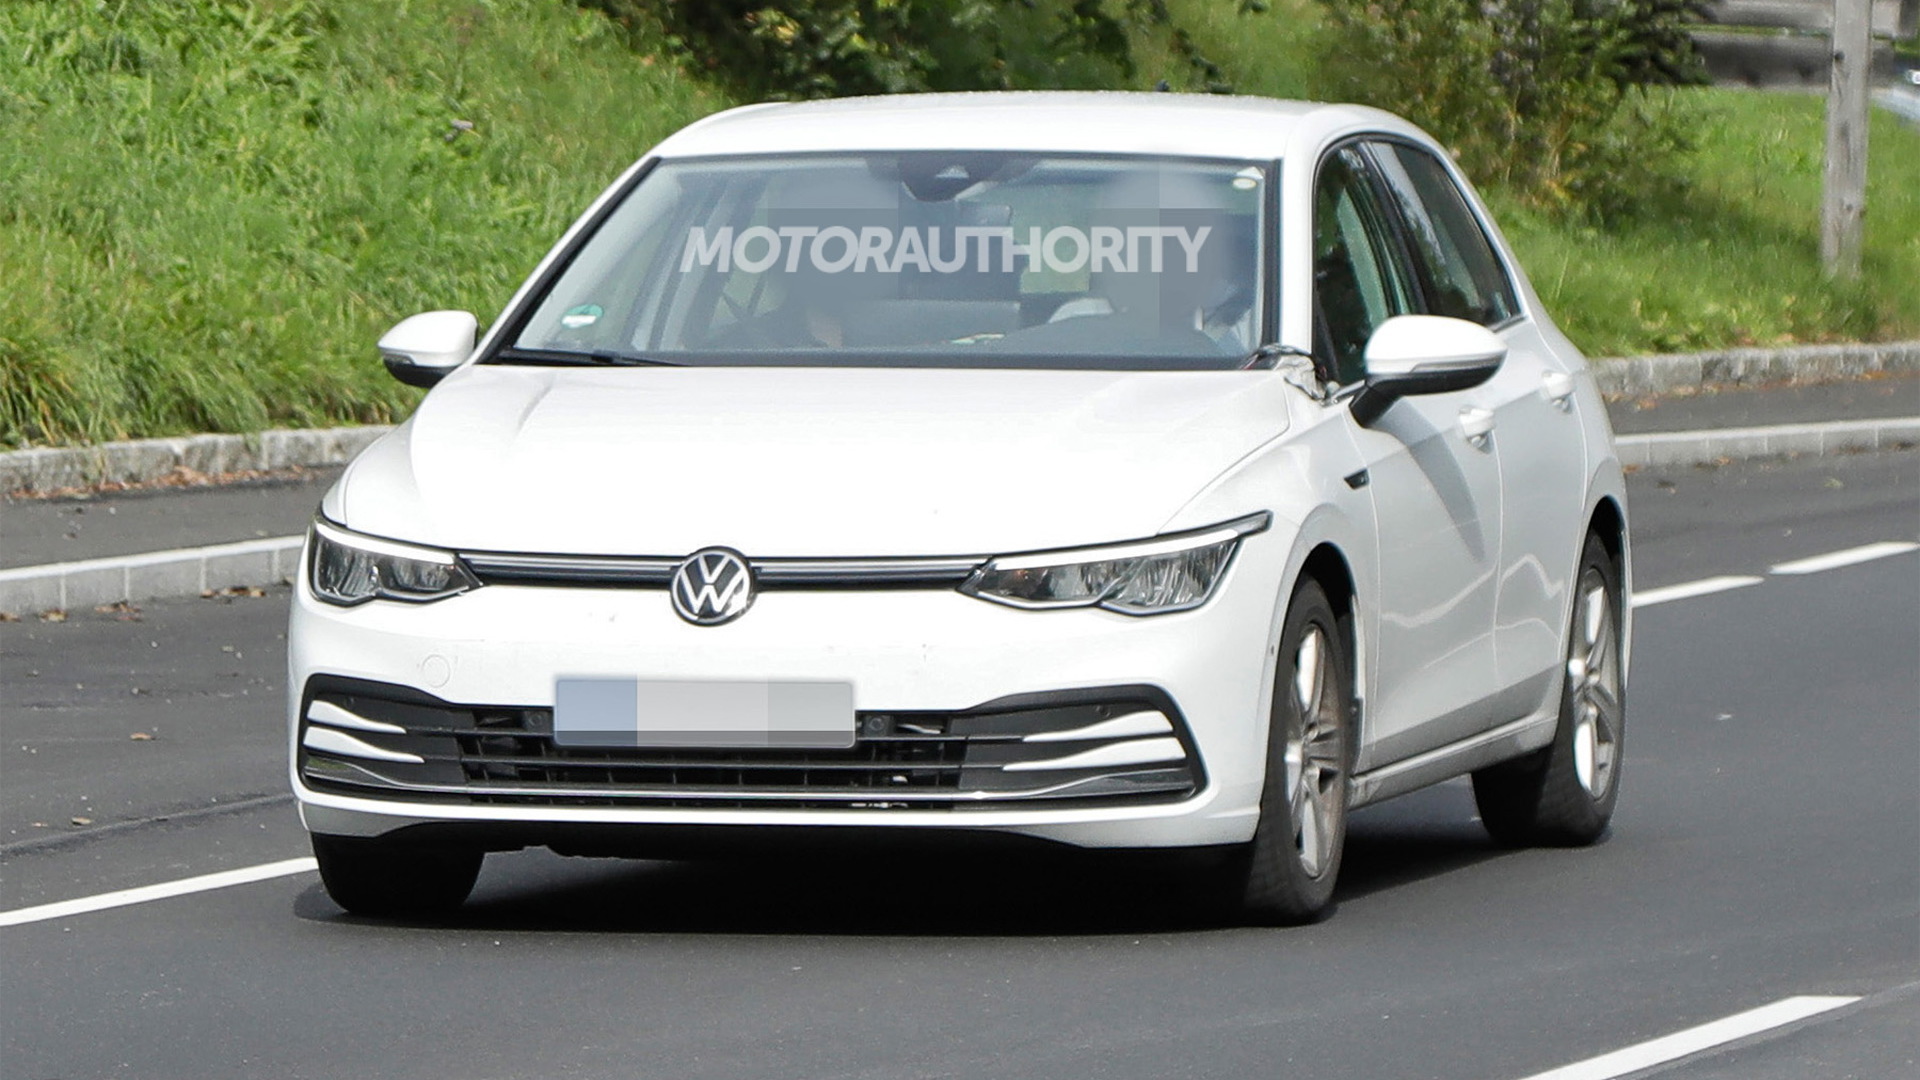 2024 Volkswagen Golf facelift spy shots - Photo credit: S. Baldauf/SB-Medien